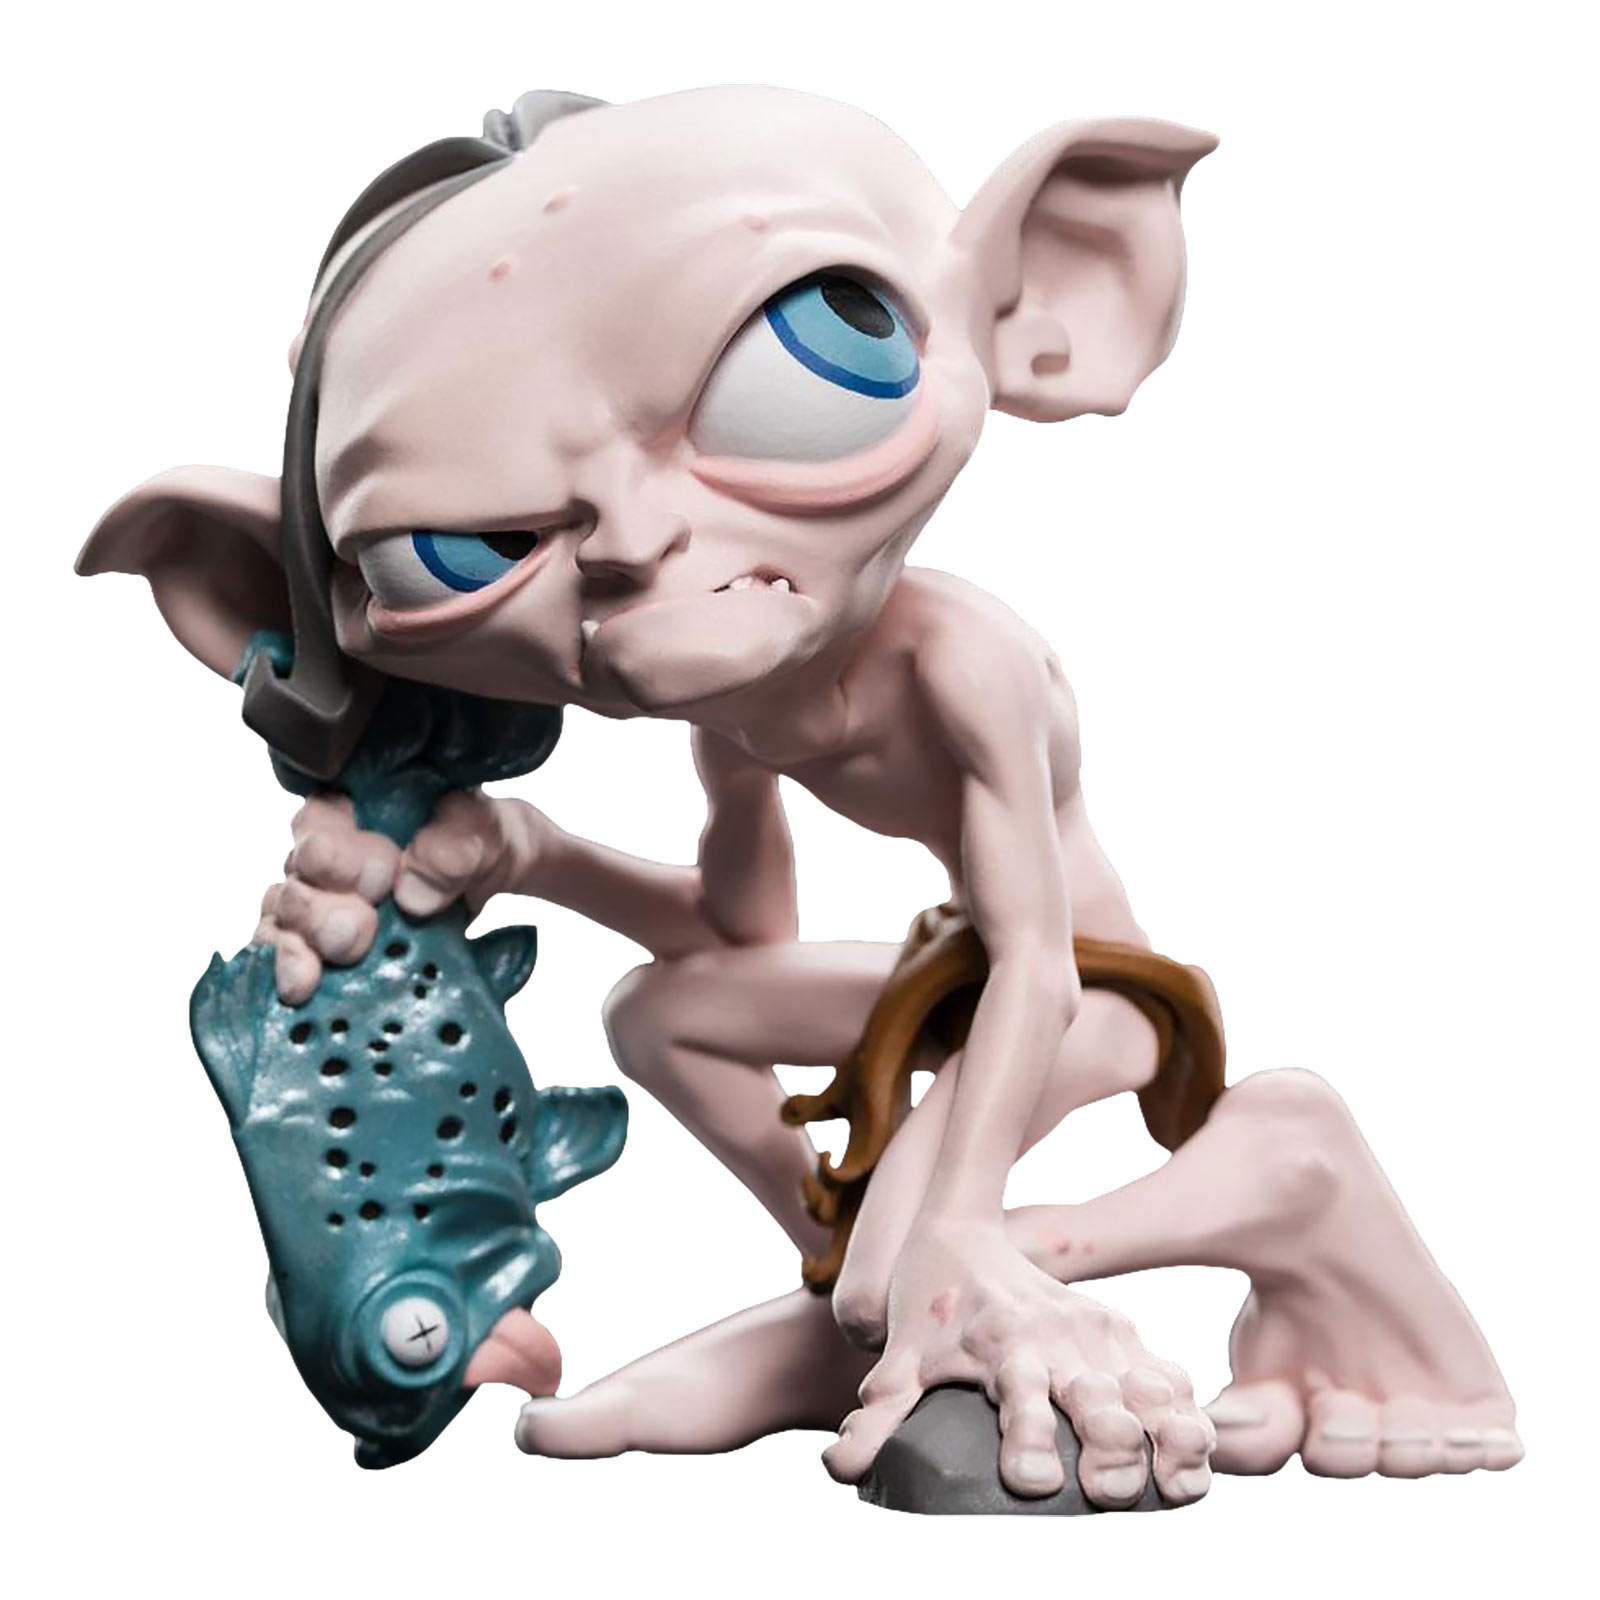 Herr der Ringe - Gollum Mini Epics Figur